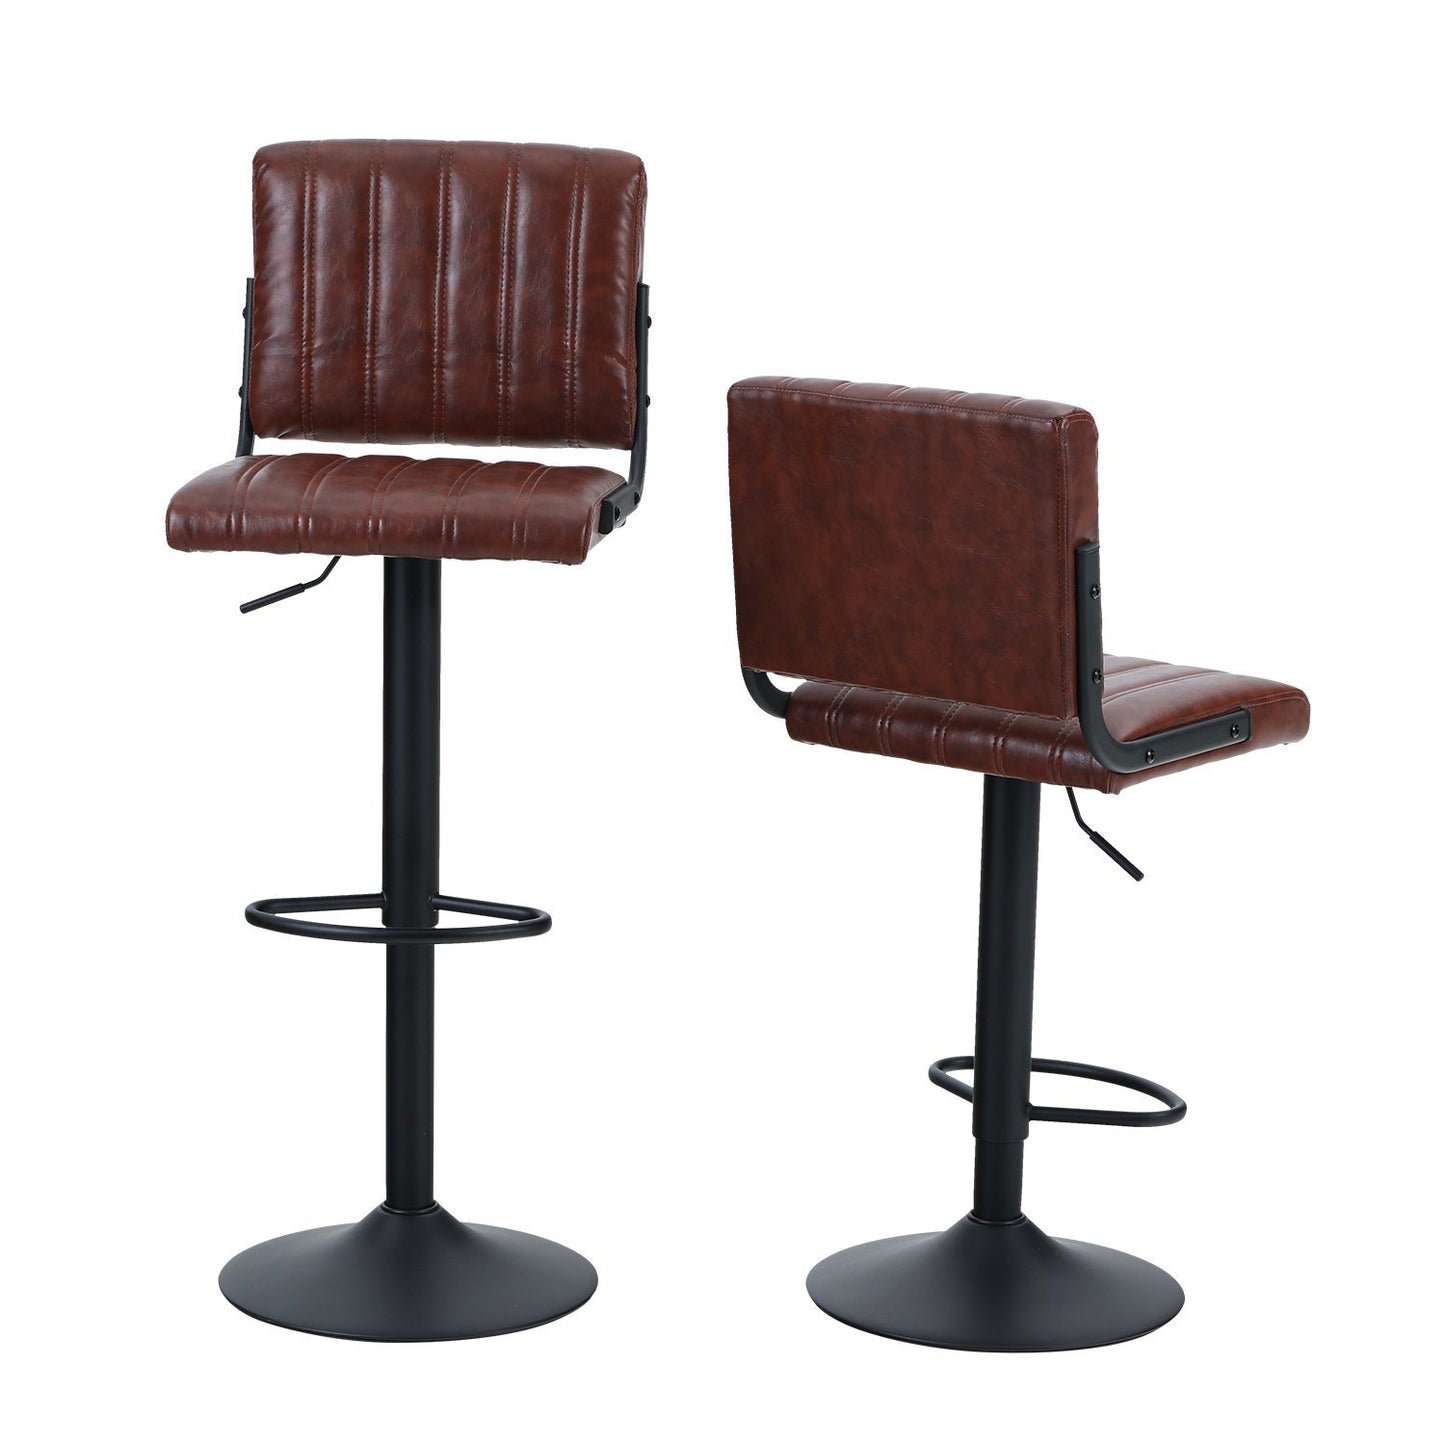 Sophia&William Adjustable Armless Bar Stools Swivel Faux Leather Barstools Set of 2, Brown